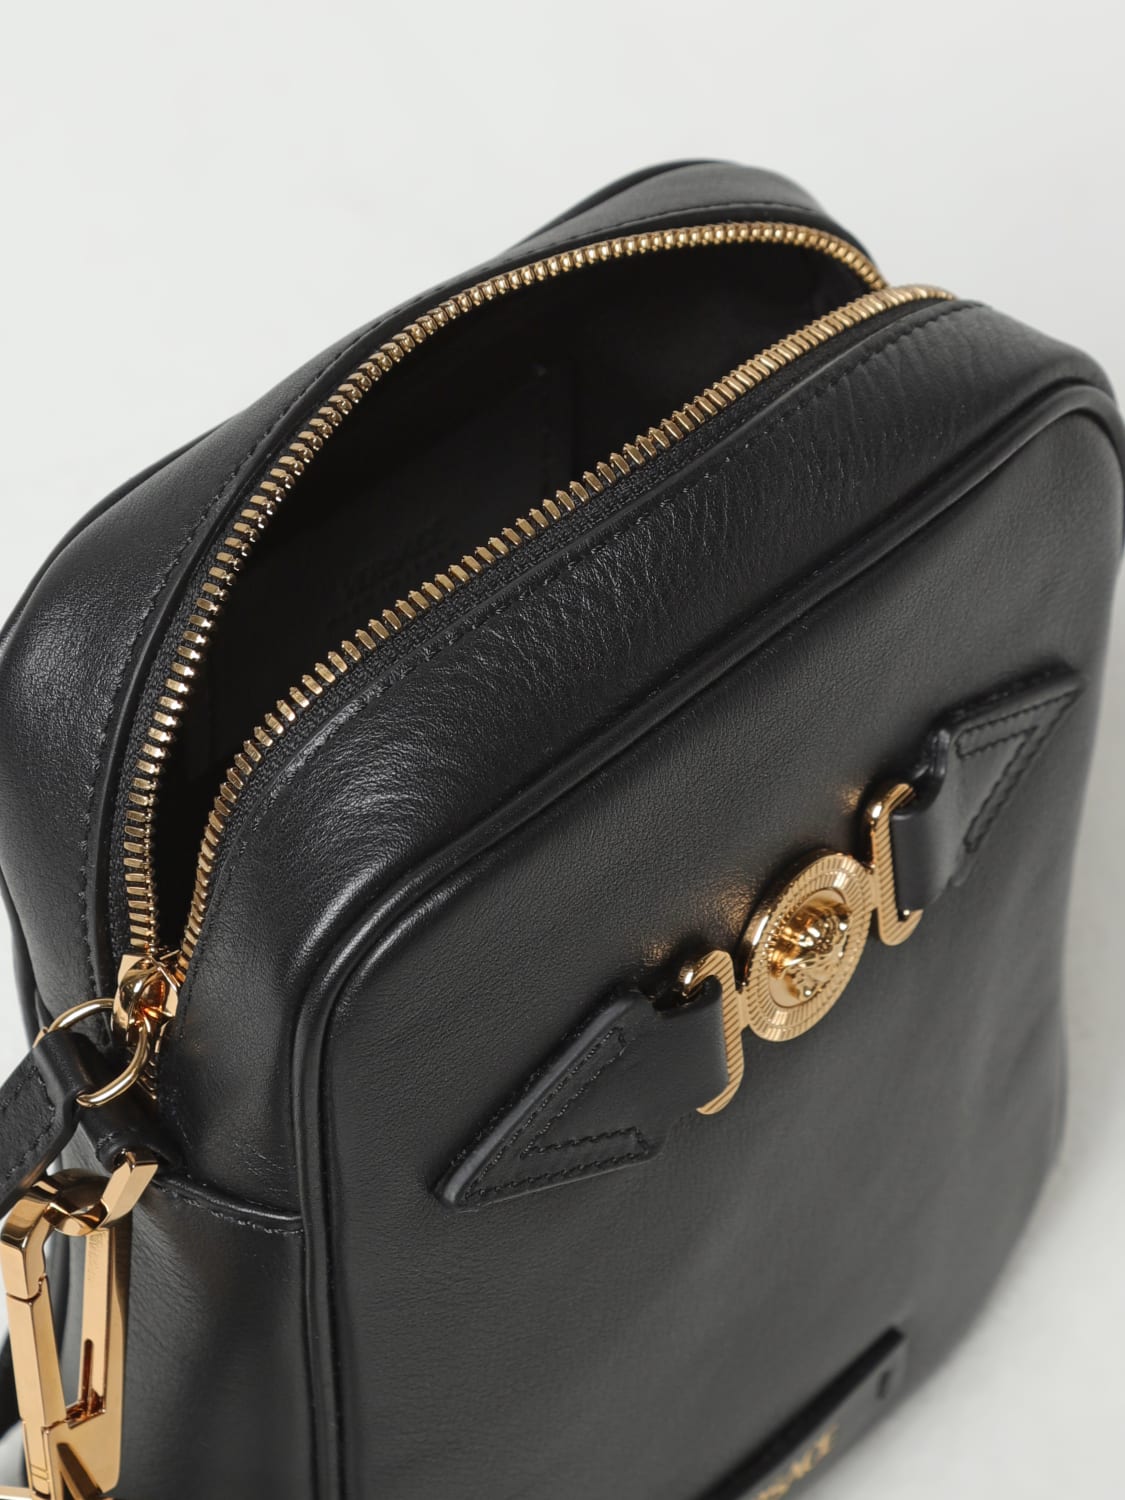 VERSACE: Medusa Biggie leather bag with shoulder strap - Black